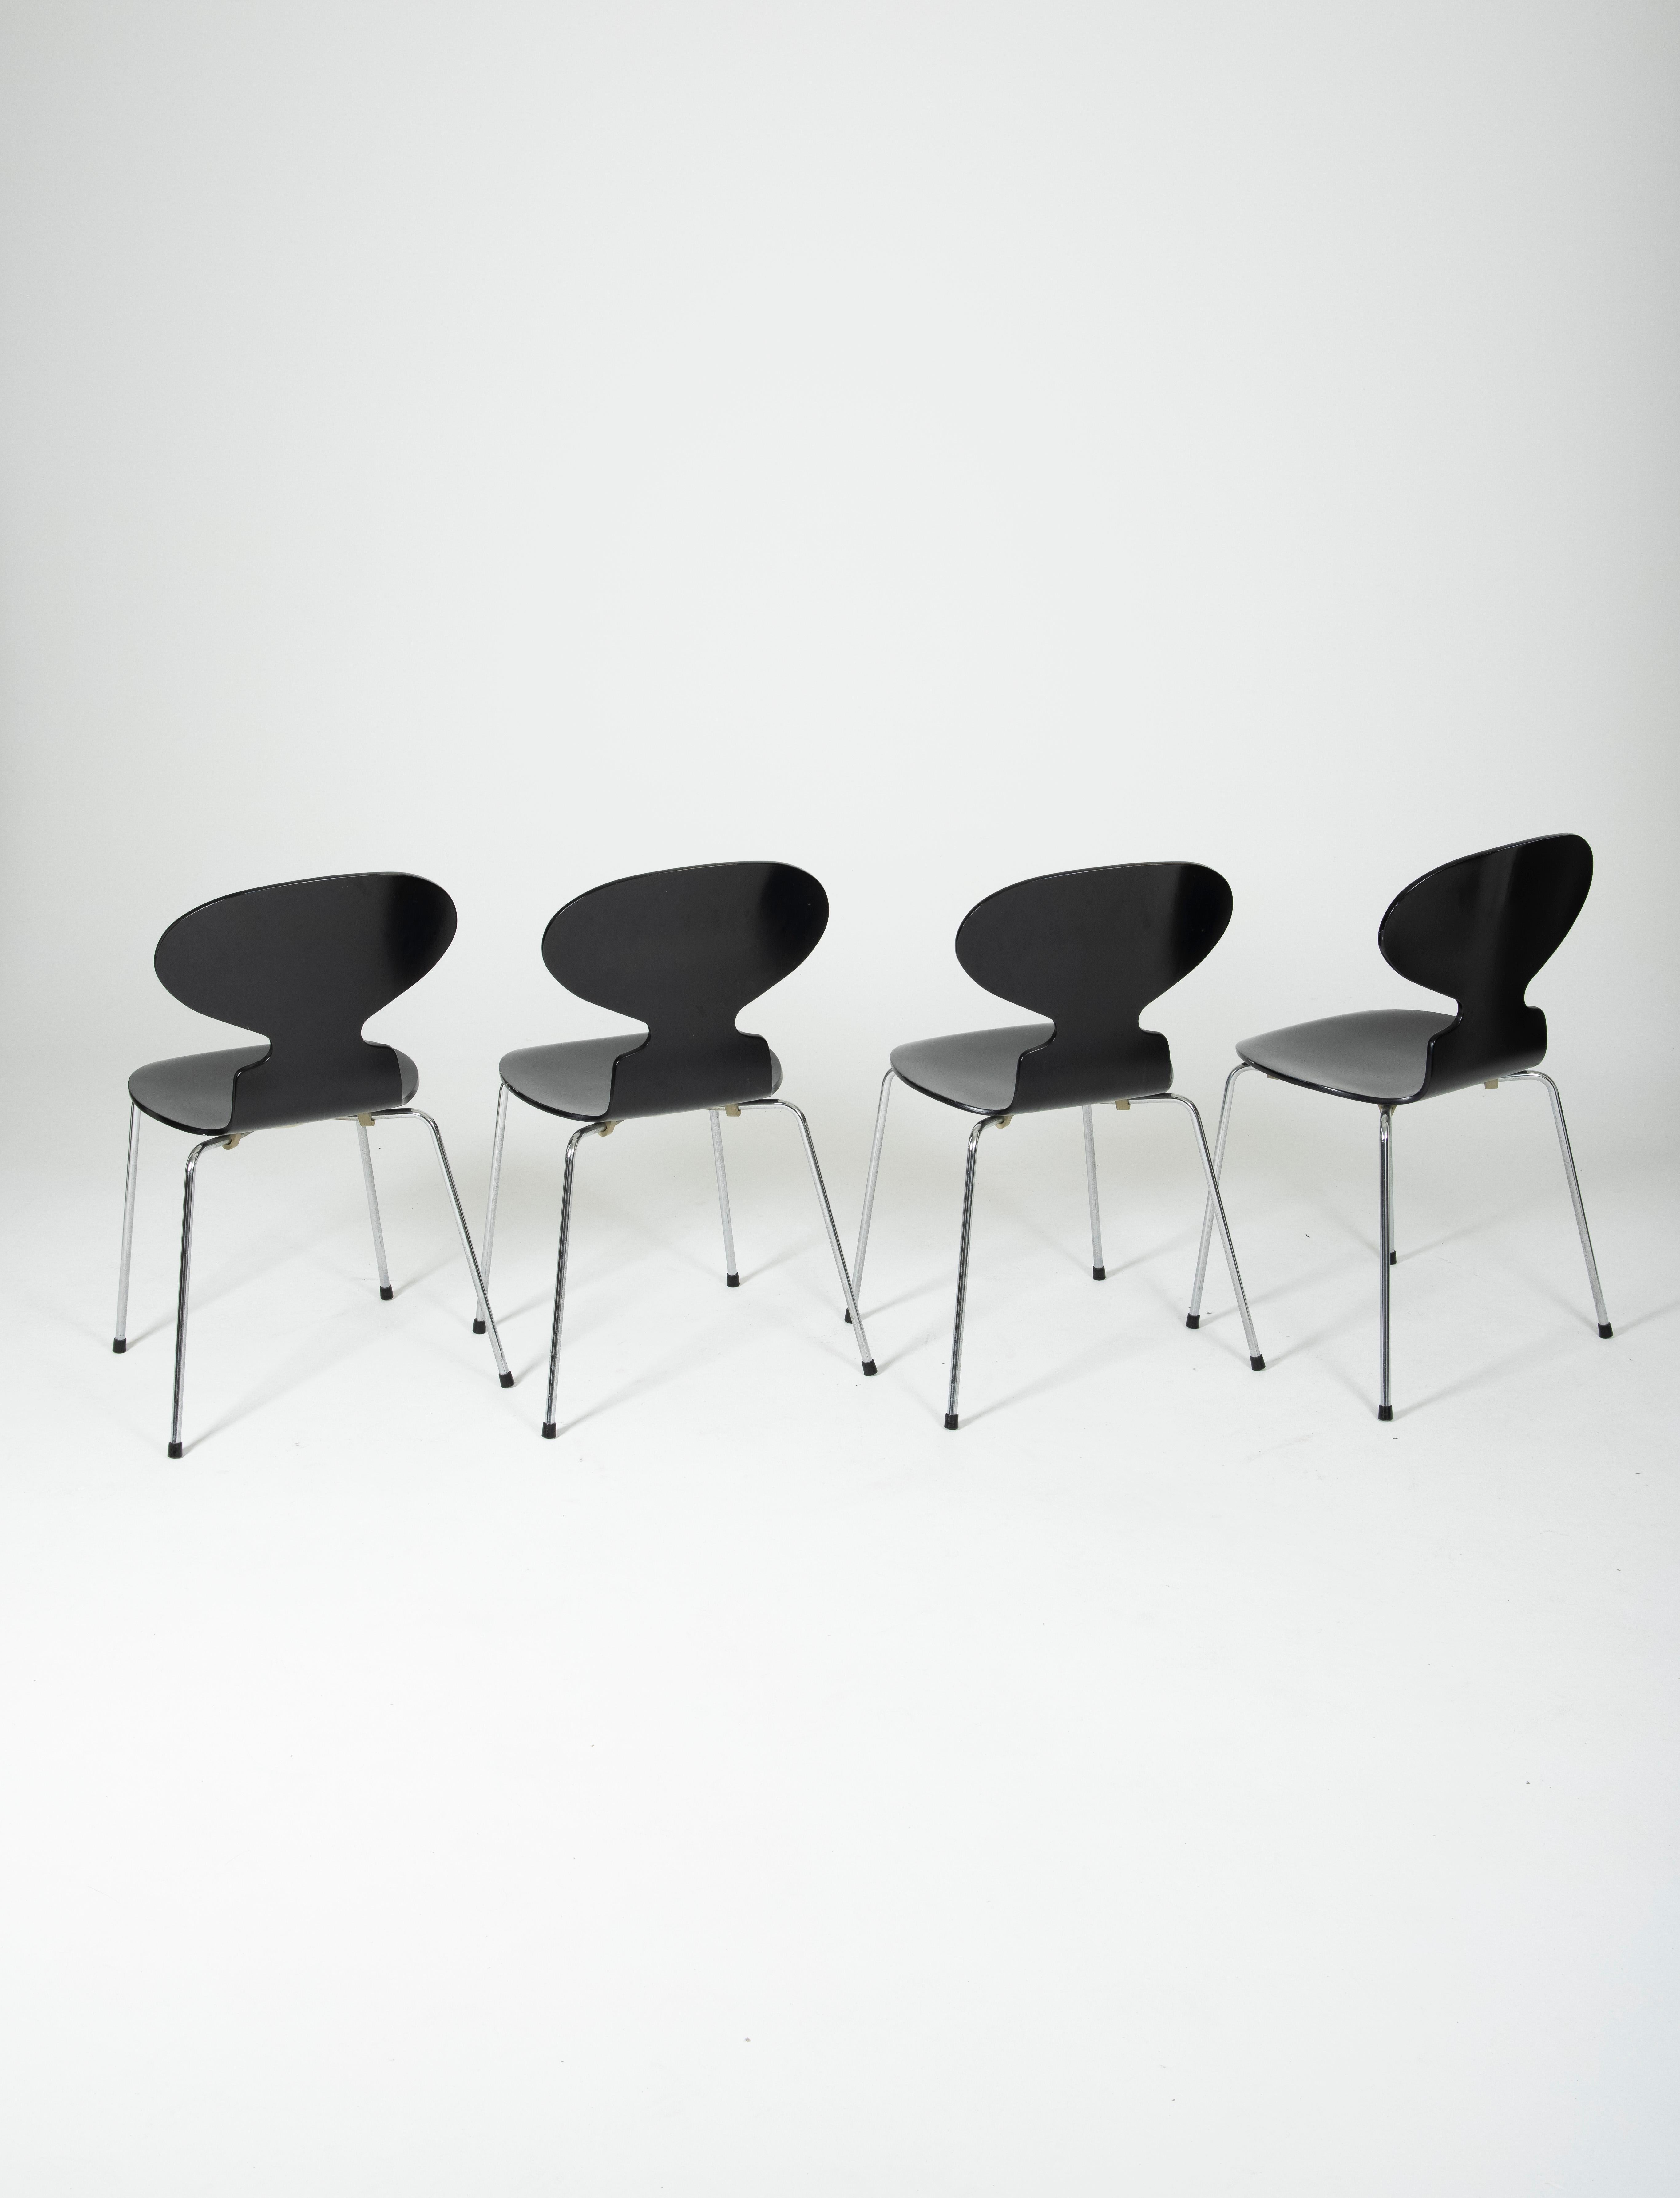 Danish  Ant Chairs Model 3101 by Arne Jacobsen for Fritz Hansen, 1986